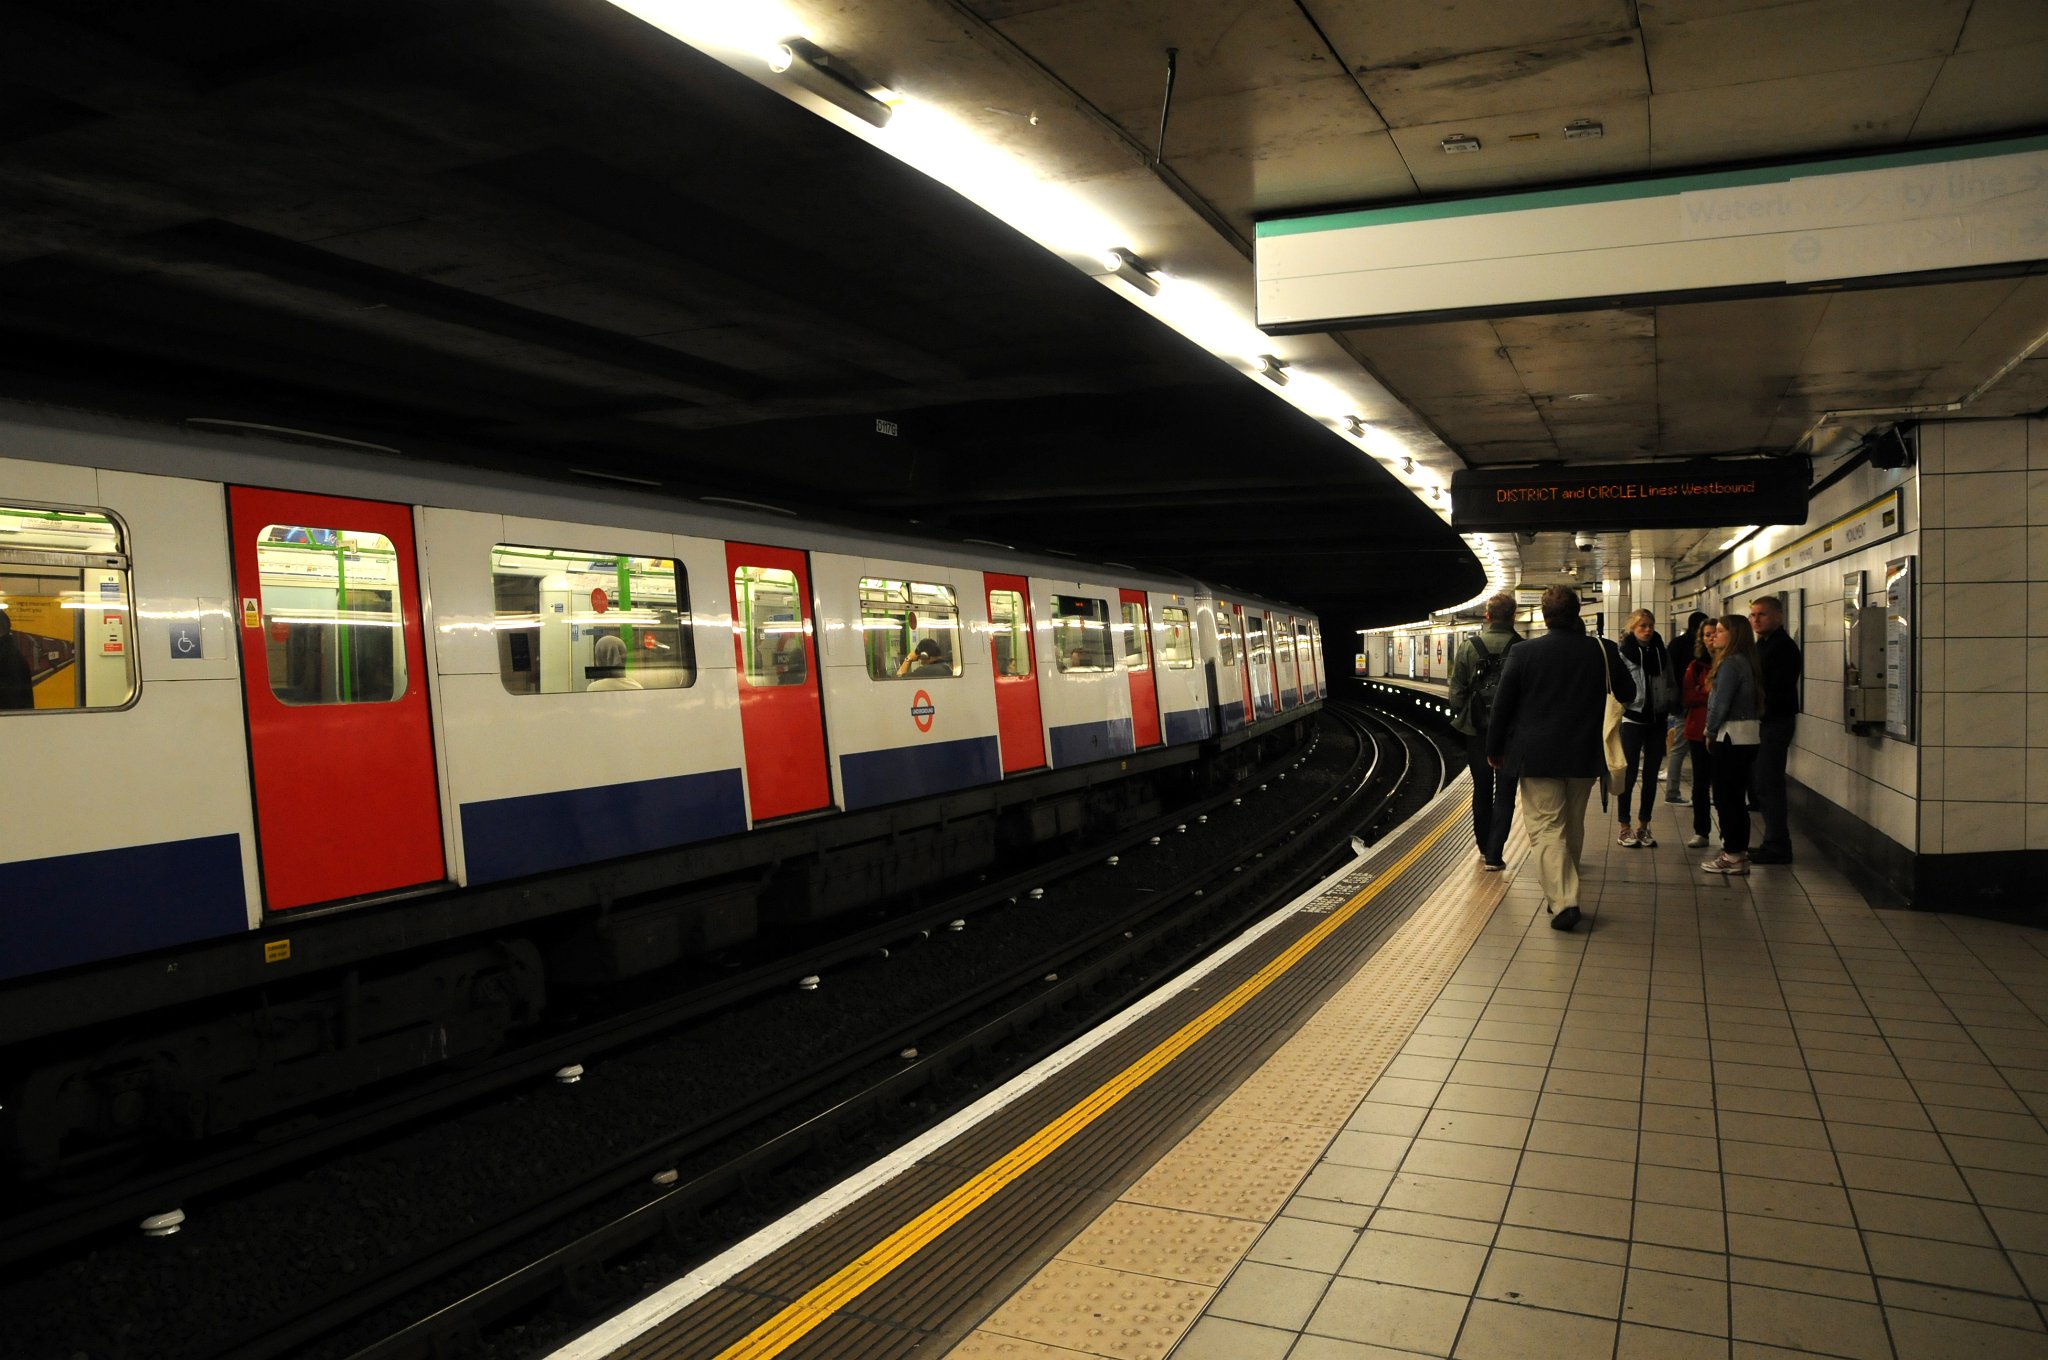 DSC_7823_1.jpg - Stanice metra Monument. Bank-Monument je komplex stanic londýnského metra a Docklands Light Railway v londýnské City. Stanicí Bank (pojmenované po Bank of England) prochází linky Northern, Central, Waterloo & City a DLR. Stanicí Monument (pojmenované po památníku Velkého požáru Londýna) prochází linky Distric a Circle.Celý komplex tvoří osmou nejvytíženější stanici londýnského metra a v roce 2009 zde vystoupilo a nastoupilo přes 40 miliónů cestujících.